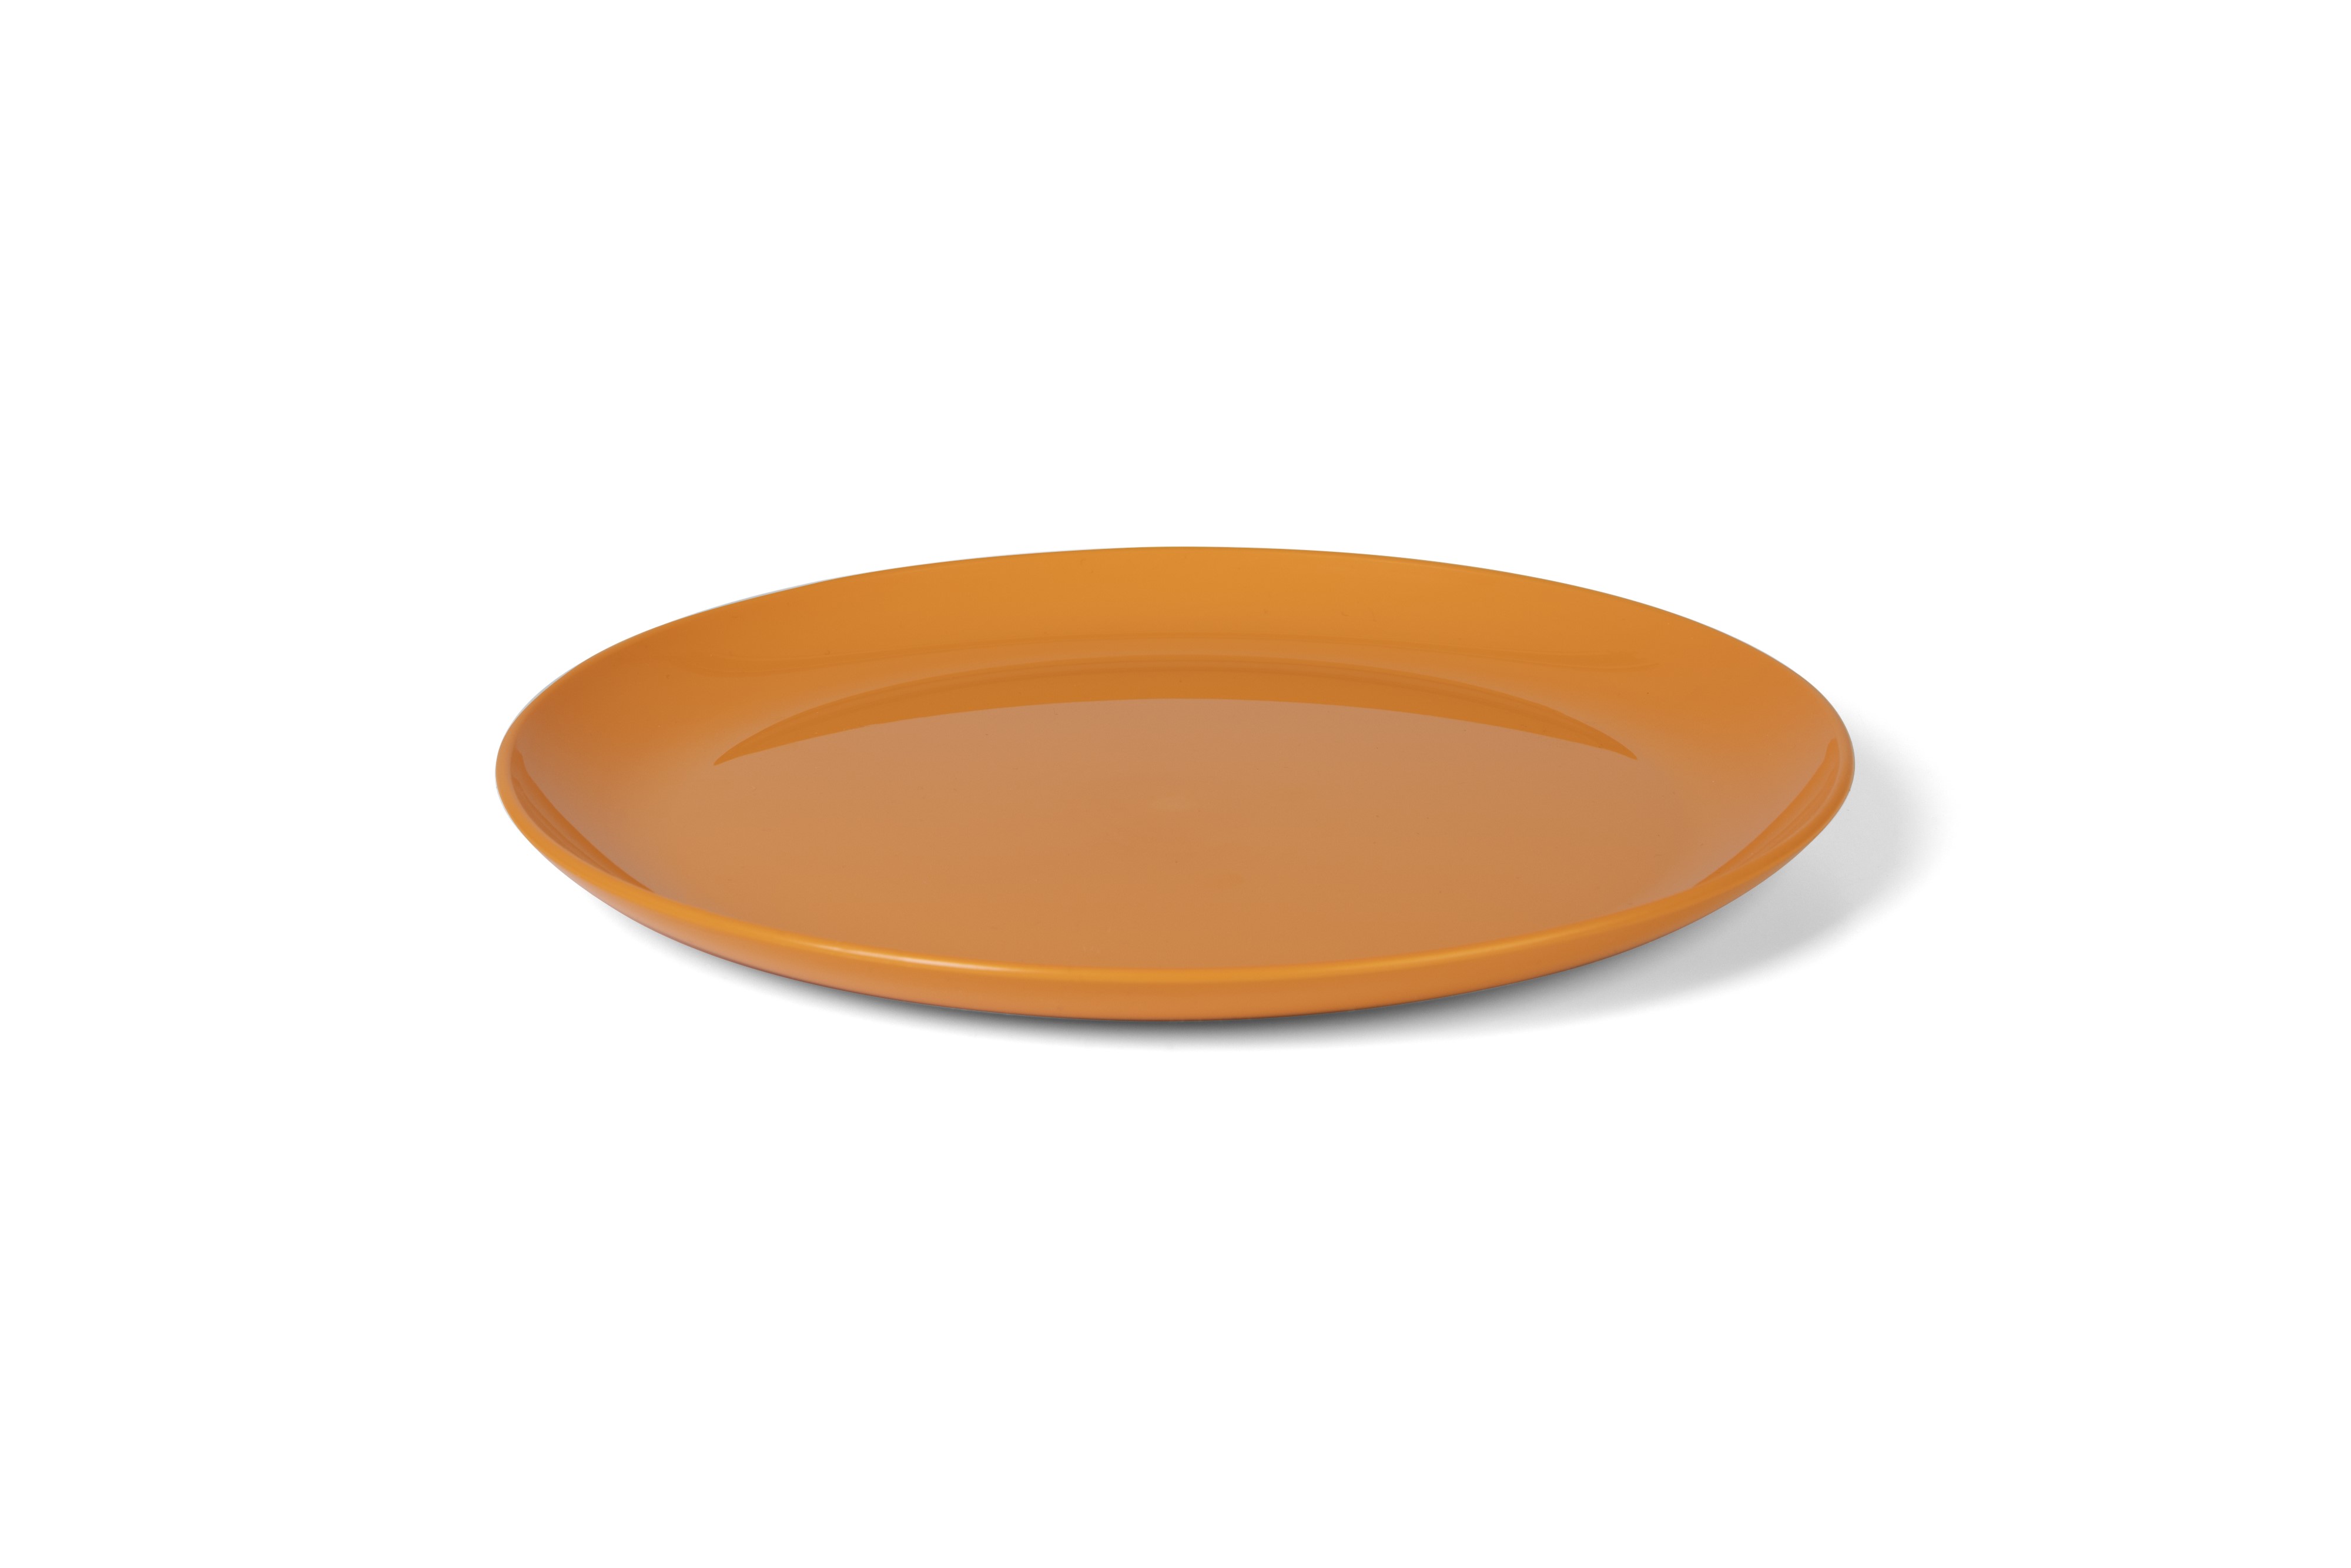 vaLon Zephyr Speiseteller 24 cm aus schadstofffreiem Kunststoff in der Farbe orange.